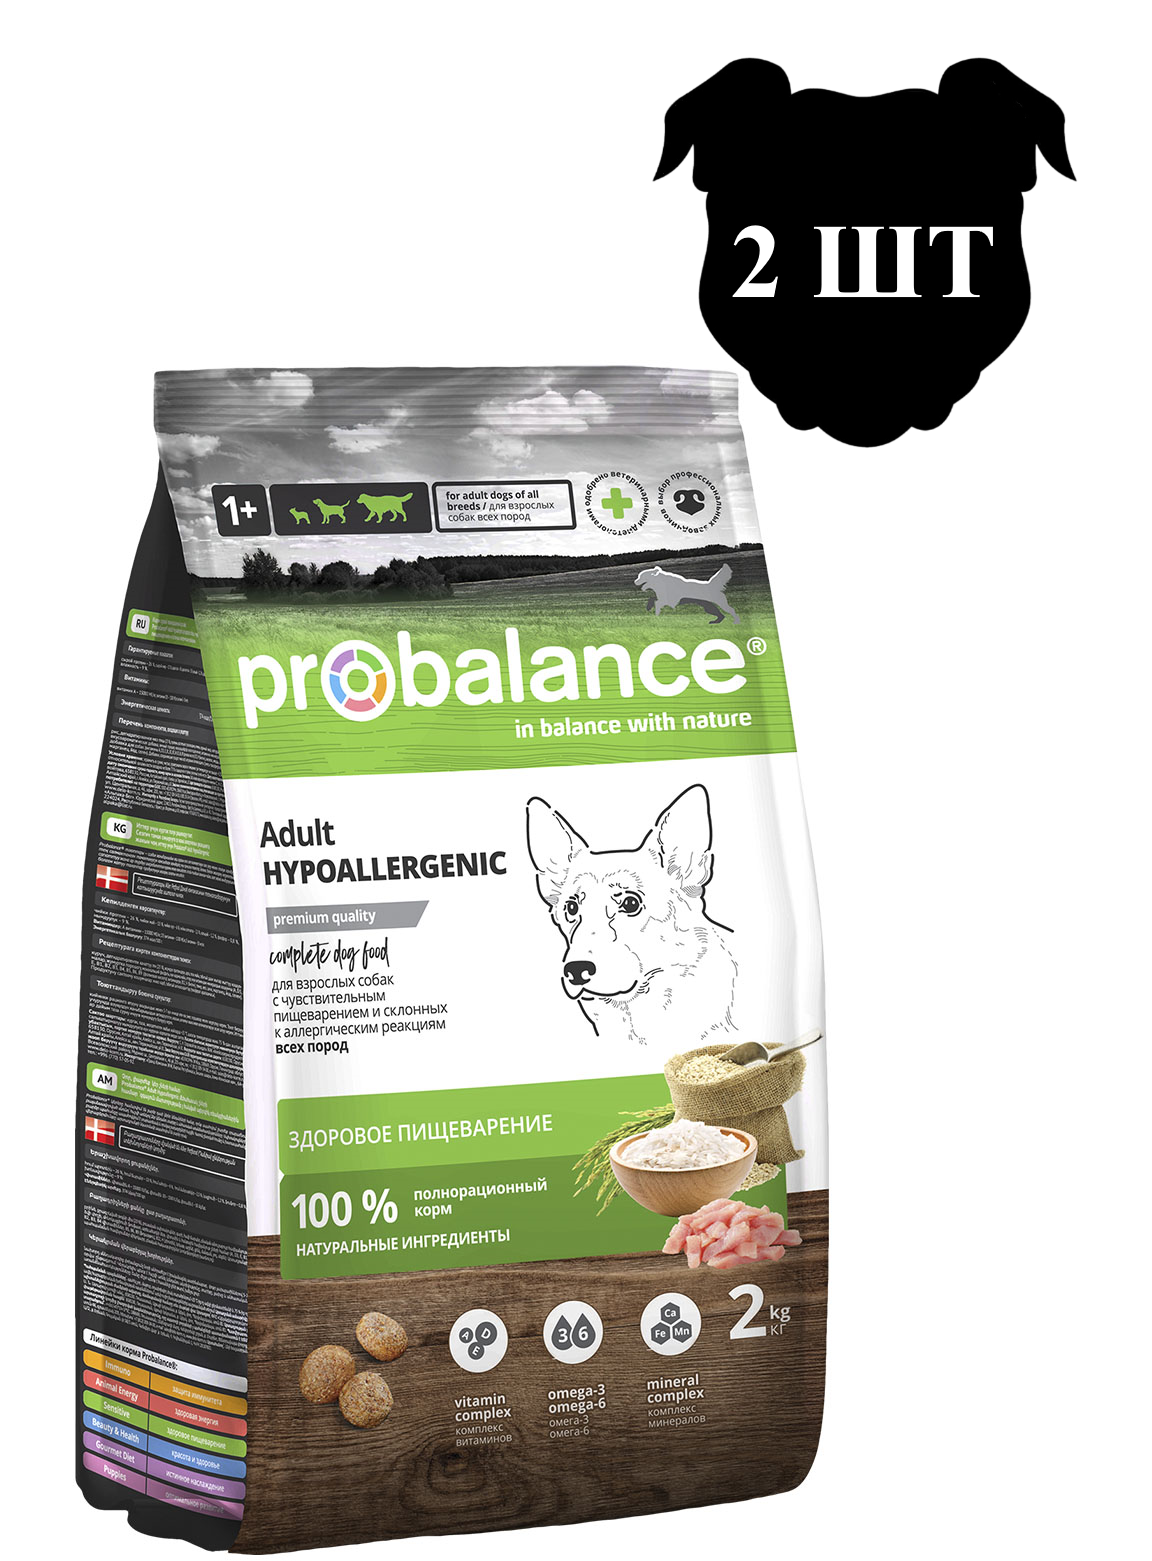 Сухой корм для собак ProBalance Hypoallergenic гипоаллергенный, 2шт по 2кг